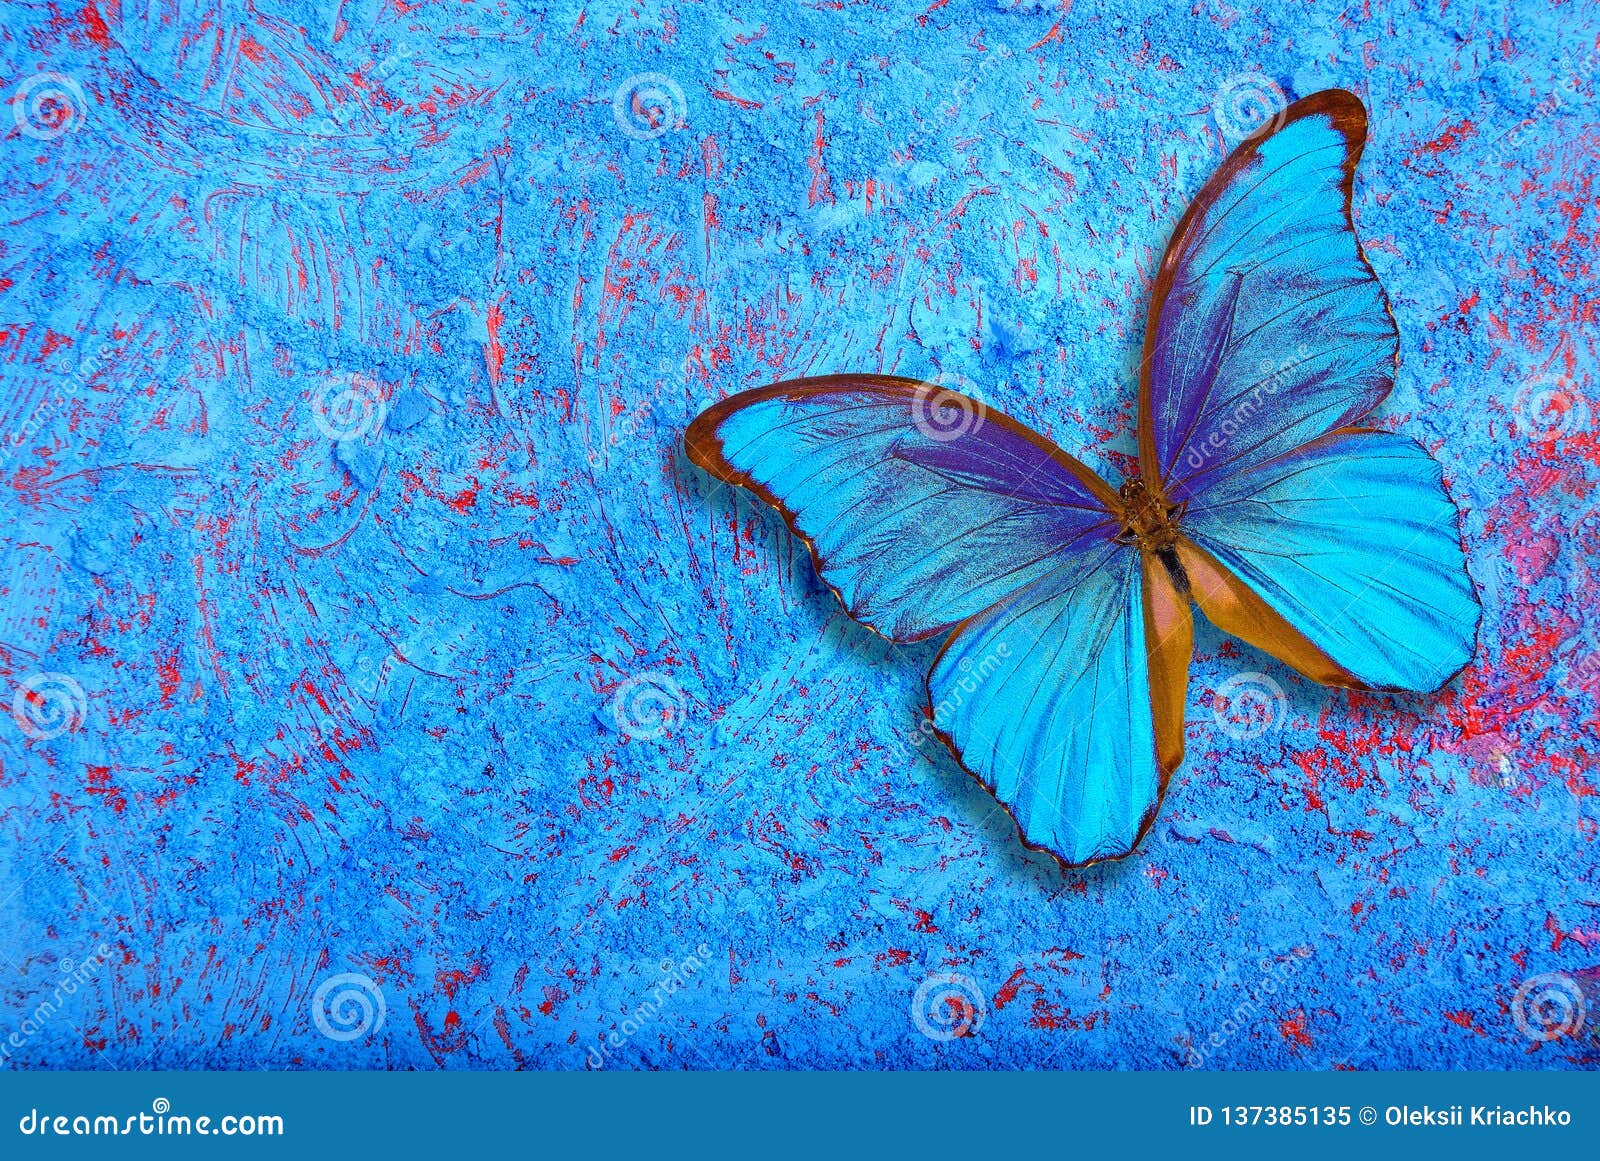 Khám phá bức ảnh Monarch của chú bướm đầy đam mê và màu sắc tươi tắn. Một thiên tài thiết kế thực sự đã dùng màu sắc, đường nét và ánh sáng để tạo nên một bức tranh đẹp ngất ngây và ấn tượng.